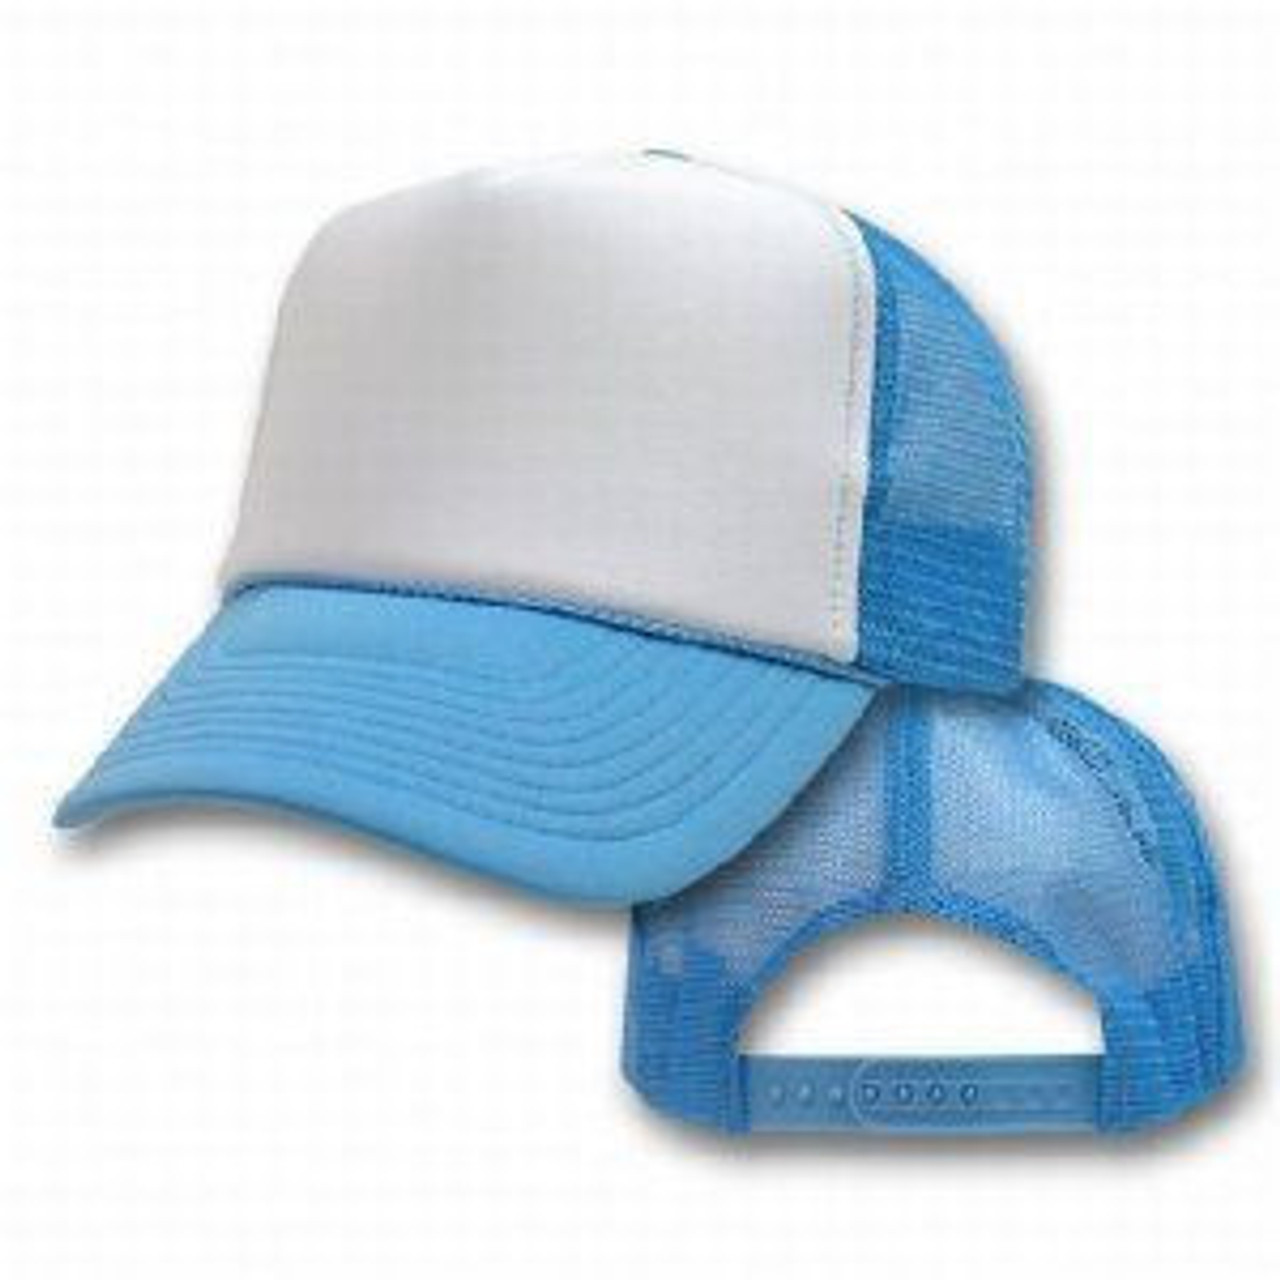 powder blue hat